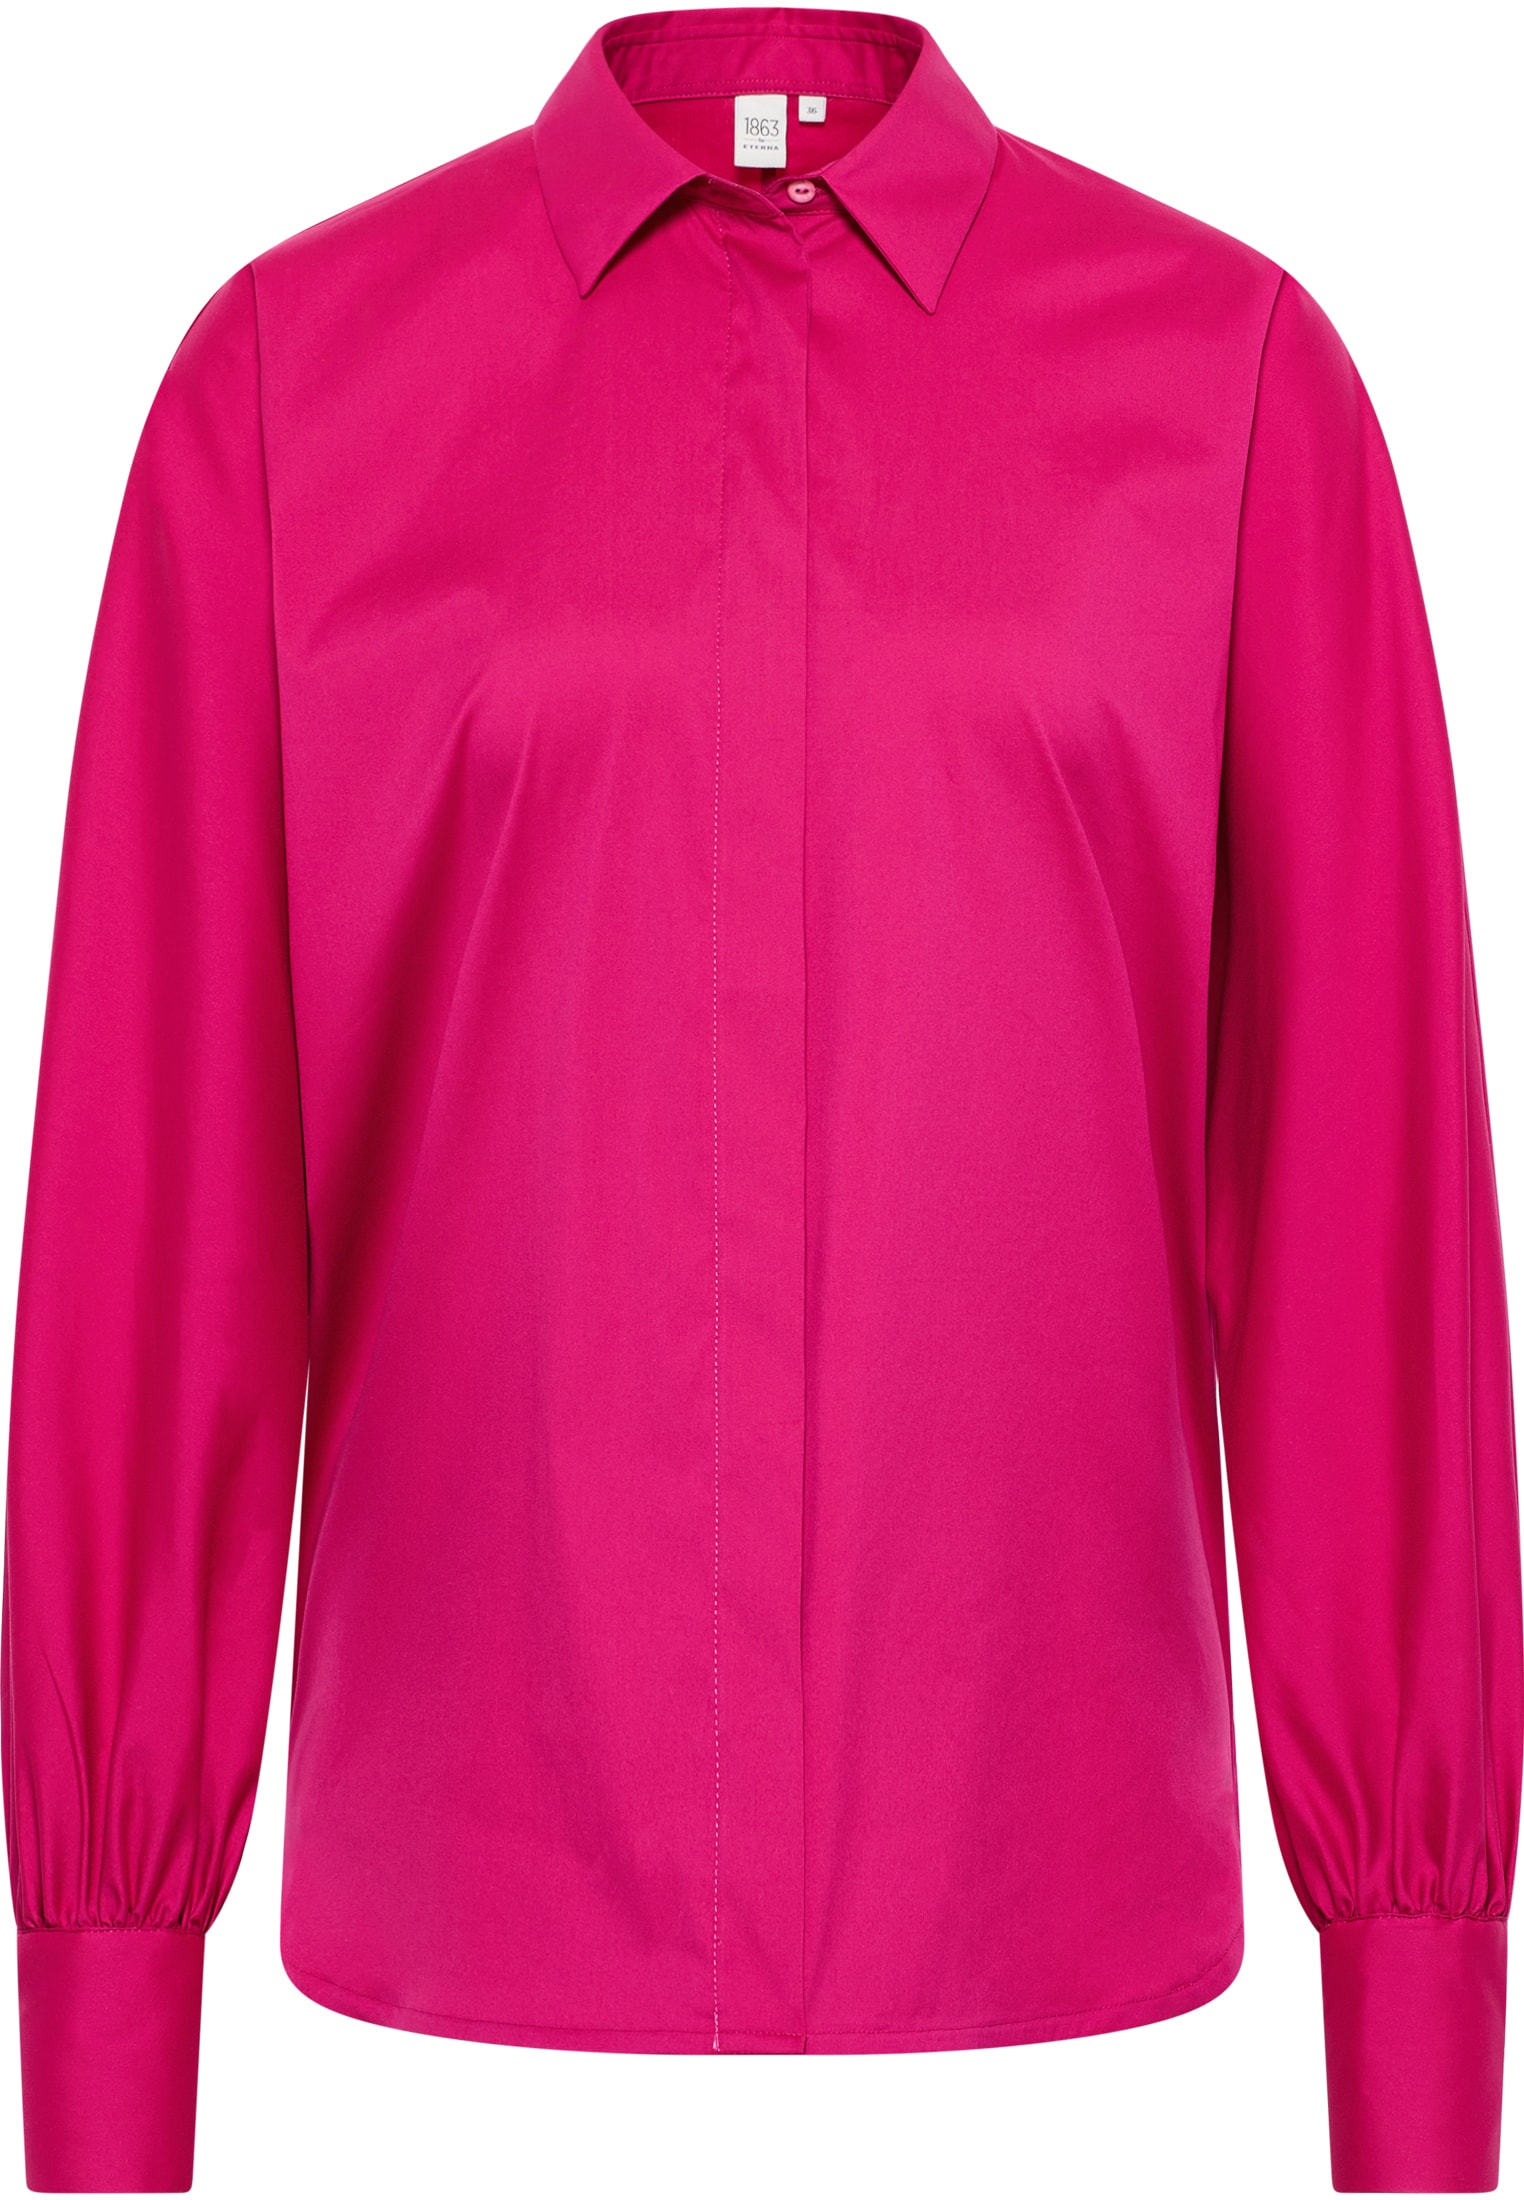 Blusenshirt in pink unifarben | 36 2BL03998-15-21-36-1/1 | pink Langarm | 